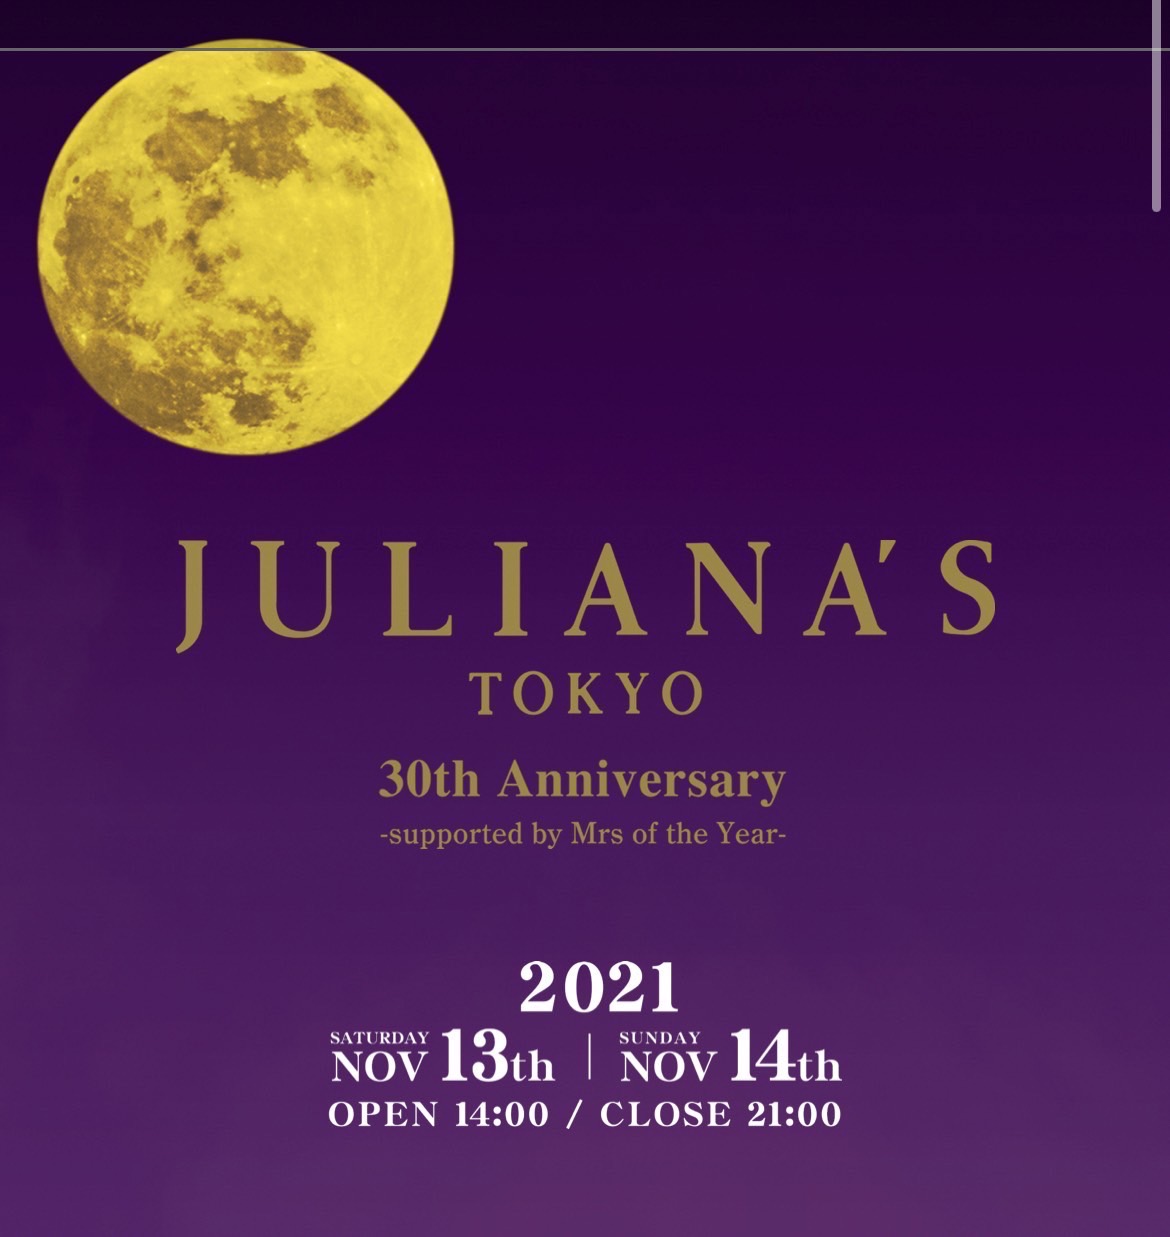 ジュリアナ東京30周年イベント フライヤーは、ジュリアナ東京CDと 同じデザインだ